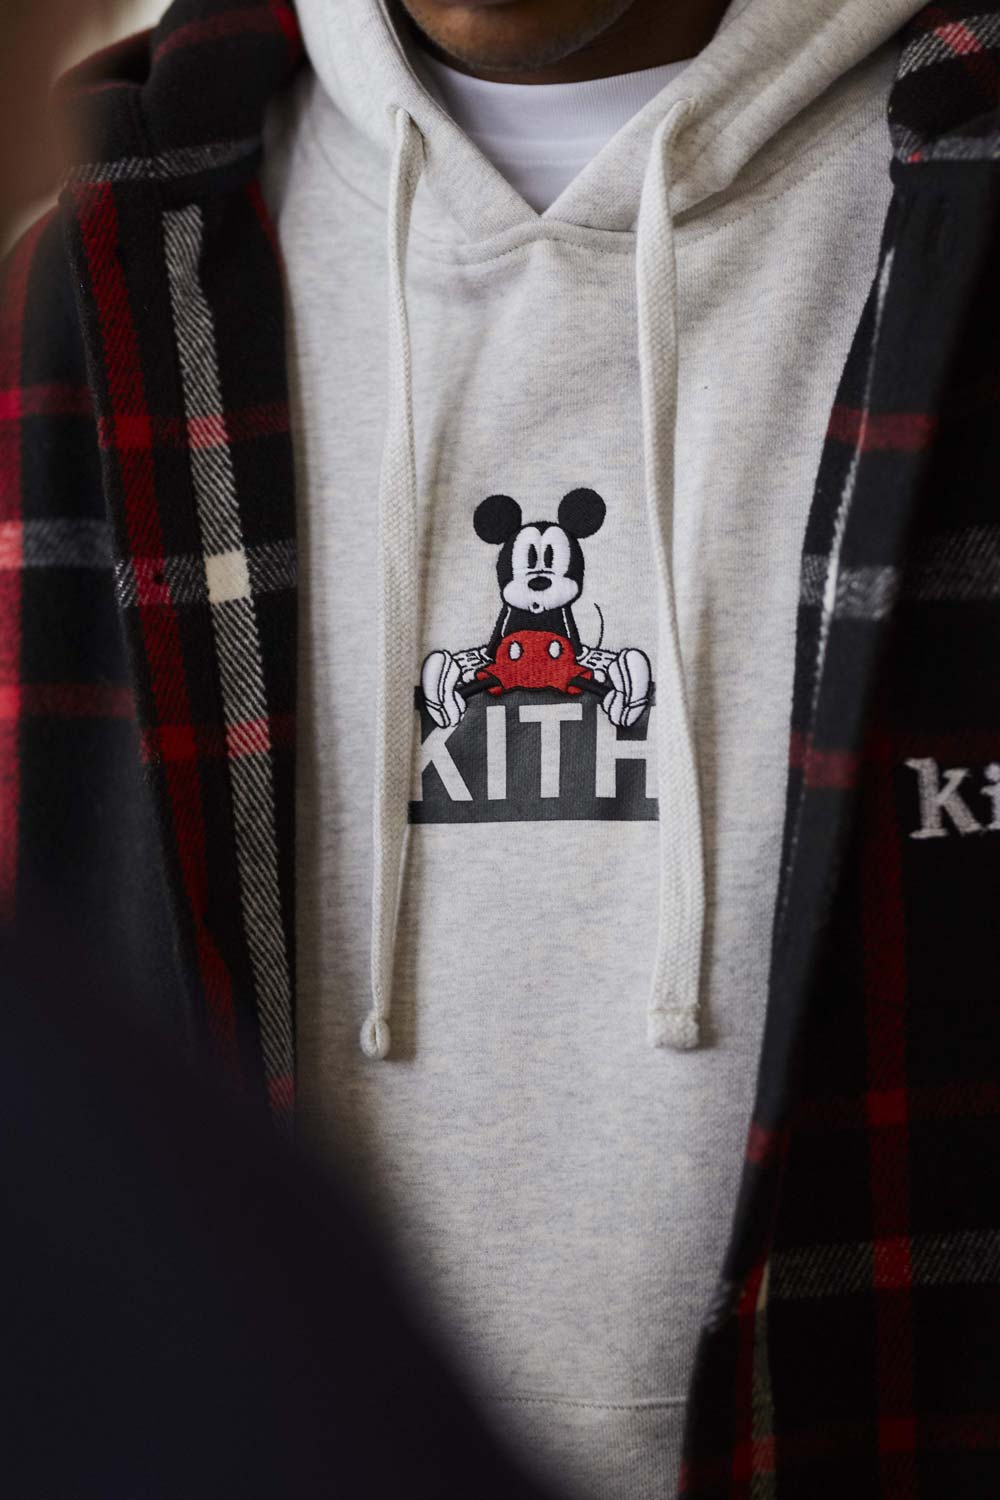 KITH x Disney Collection Le Site de la Sneaker